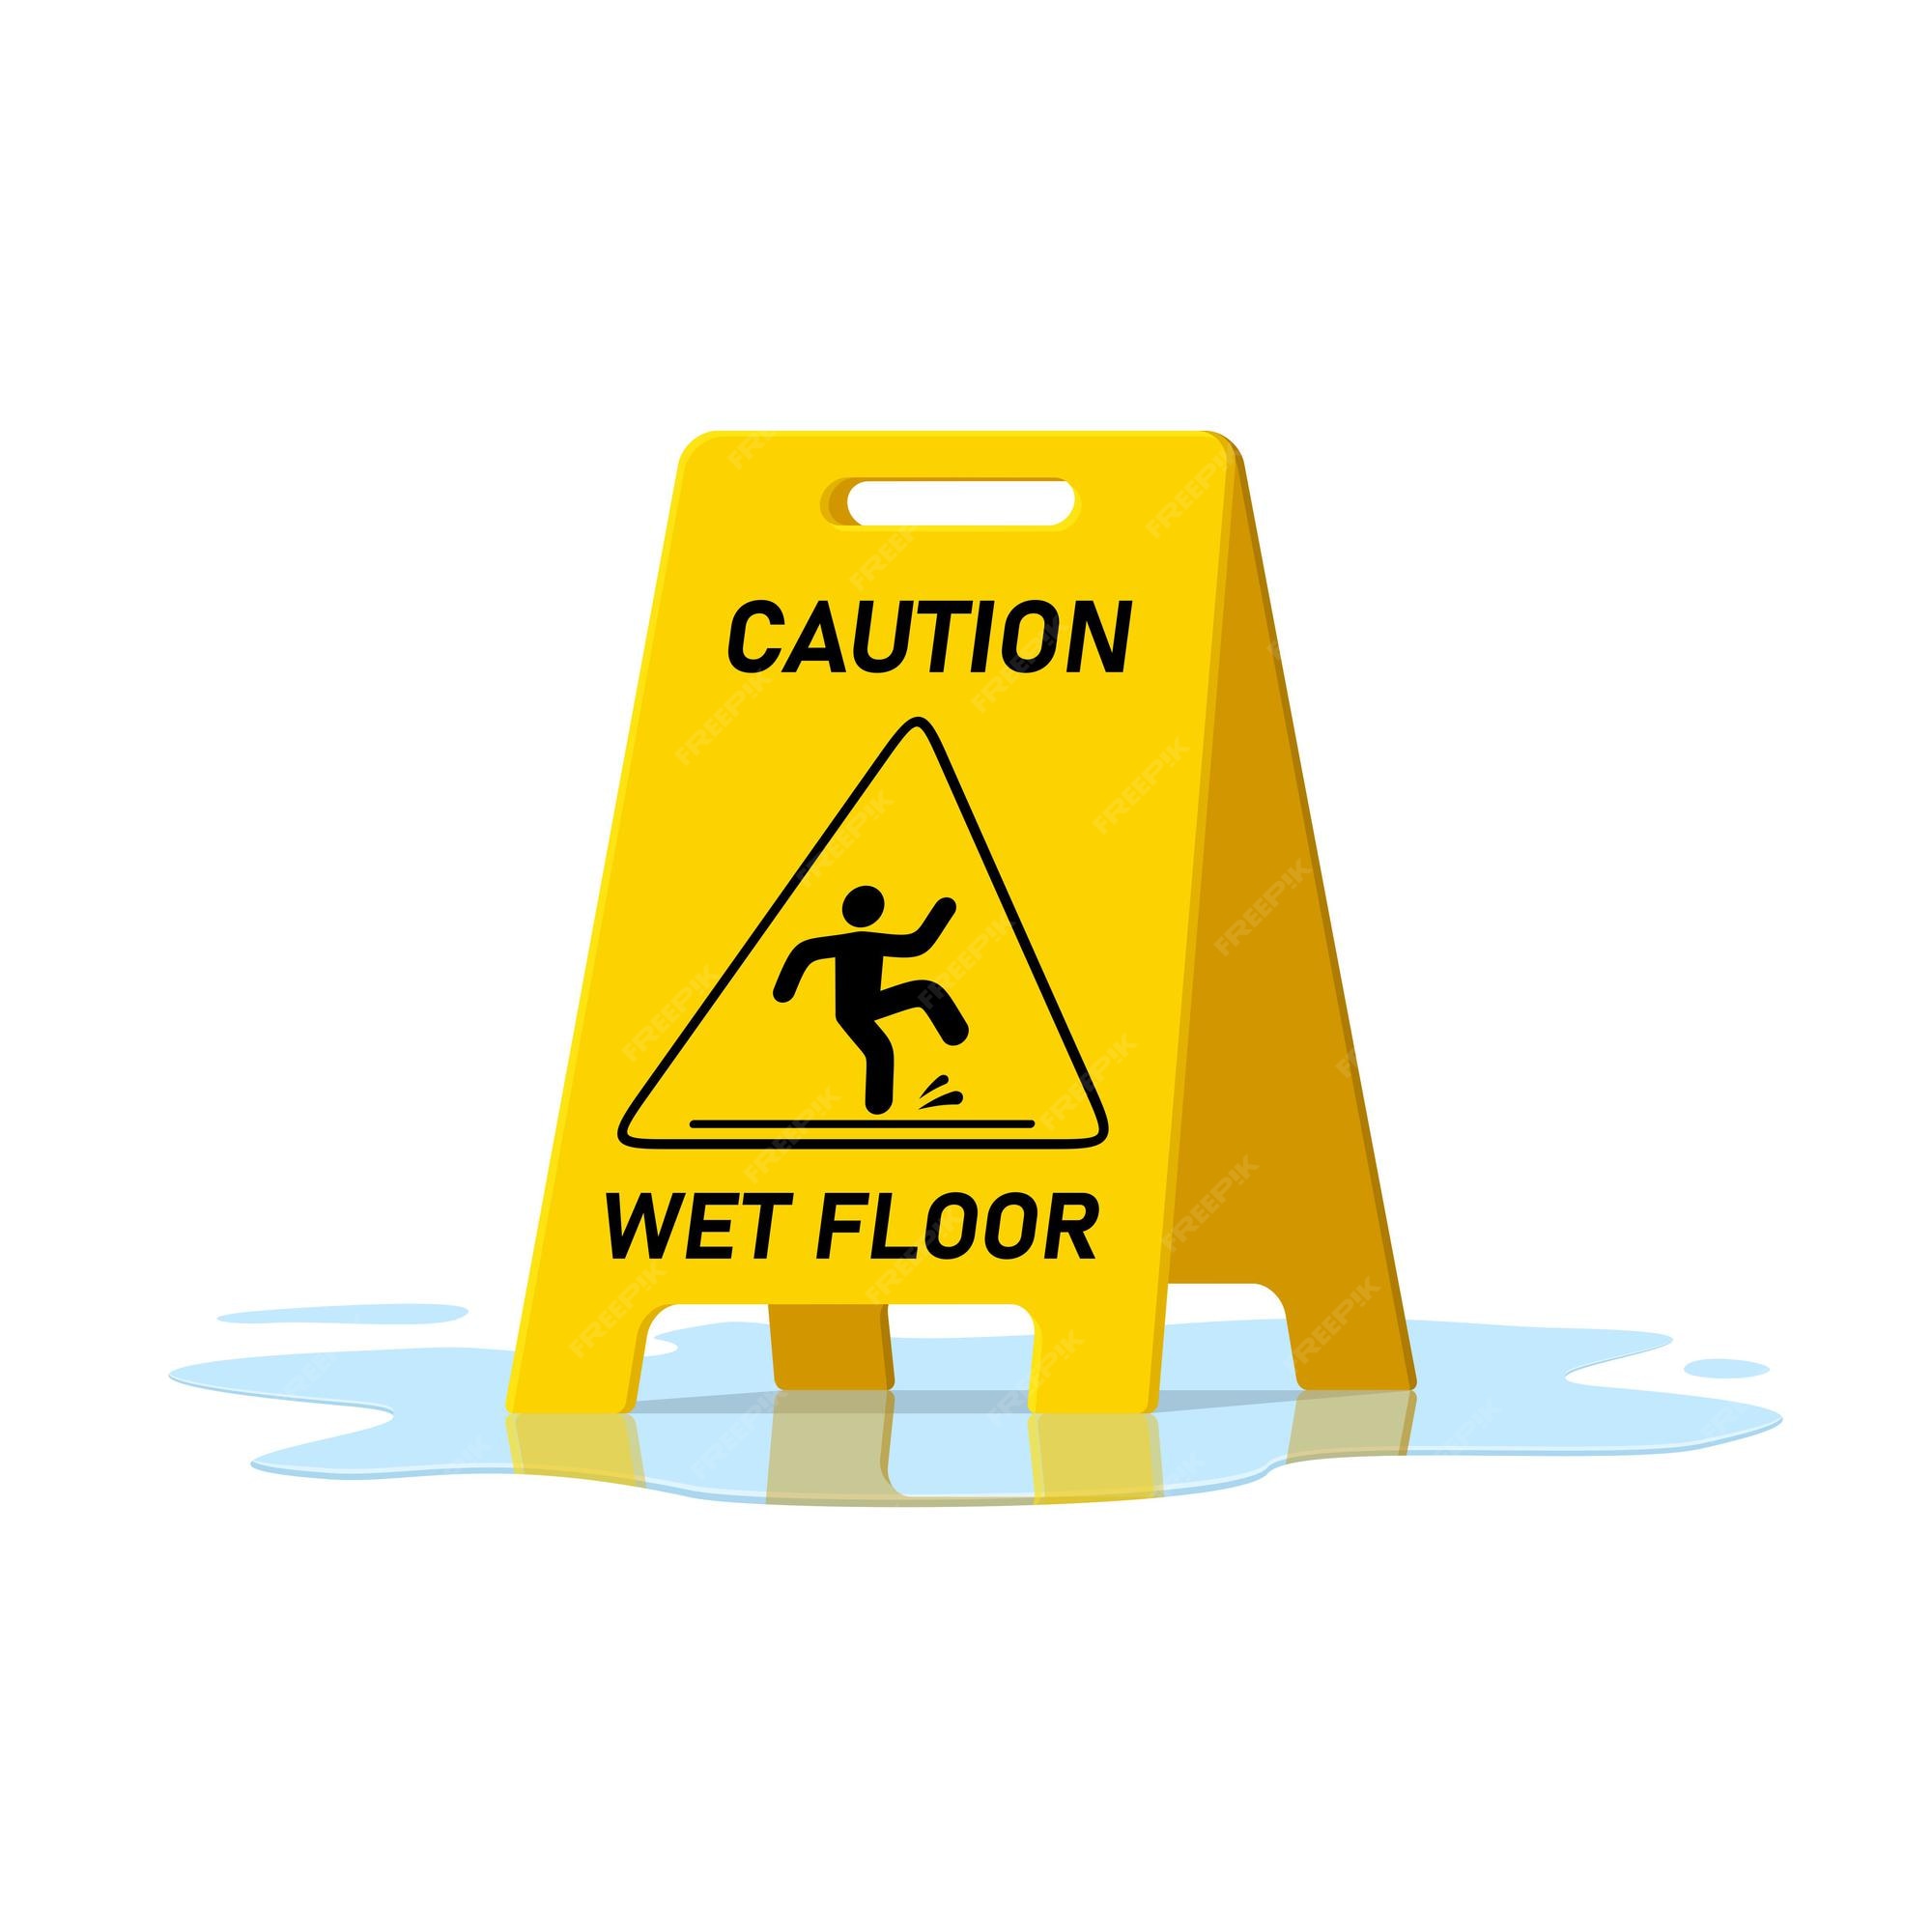 Hình ảnh biểu tượng chỉ dẫn độ ẩm mặt sàn được cách ly trong định dạng vector, cho phép bạn dễ dàng sử dụng trong bất kỳ dự án thiết kế nào. Mau chóng lên xem hình ảnh này giúp bạn cảnh báo người dùng về nguy hiểm trên sàn nhà một cách an toàn và hiệu quả nào!